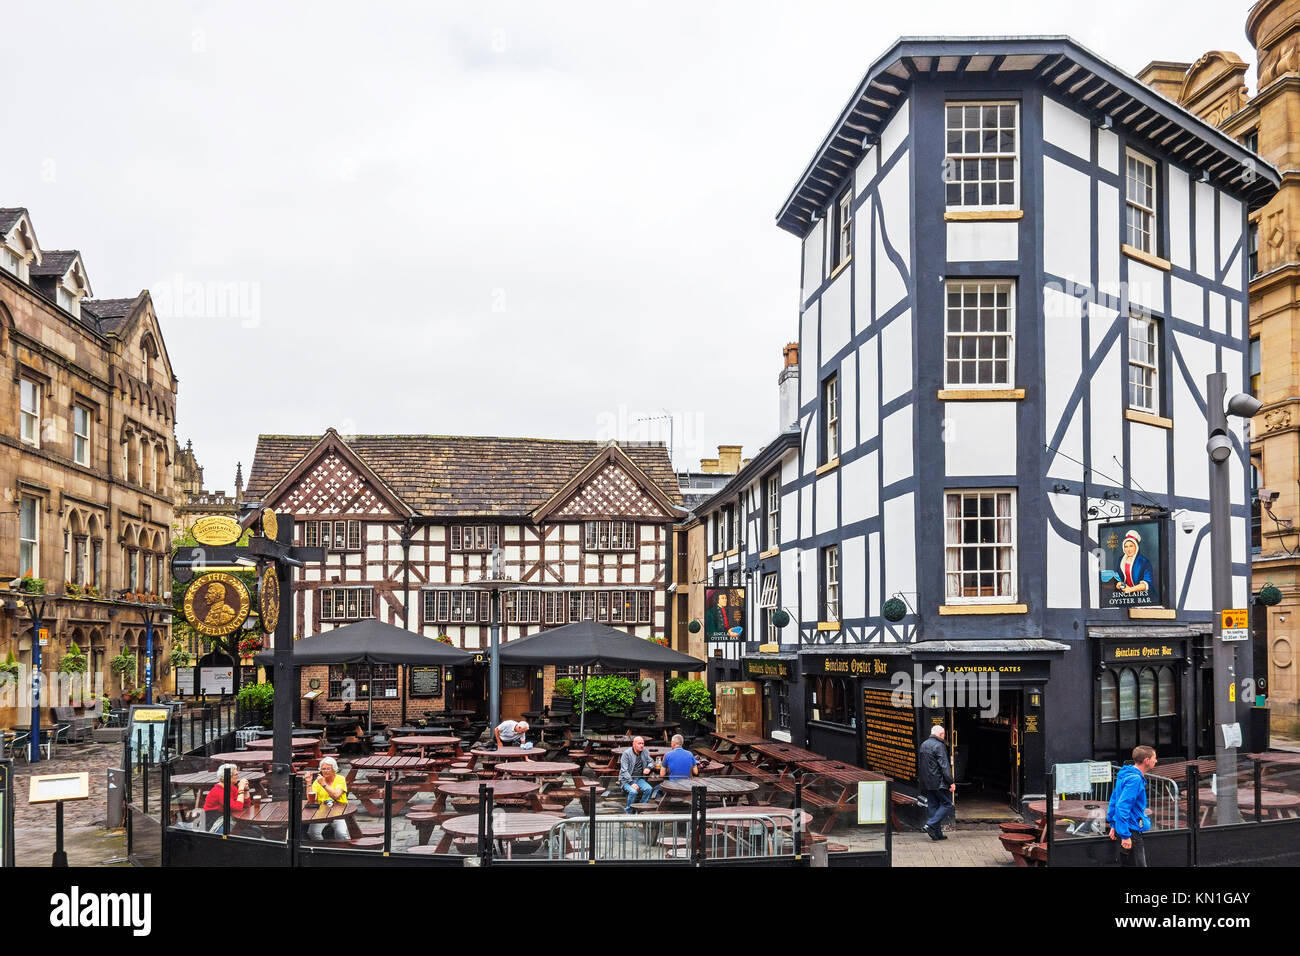 Shambles Square dans le quartier historique de Manchester, Angleterre, Grande-Bretagne, Royaume-Uni. Banque D'Images